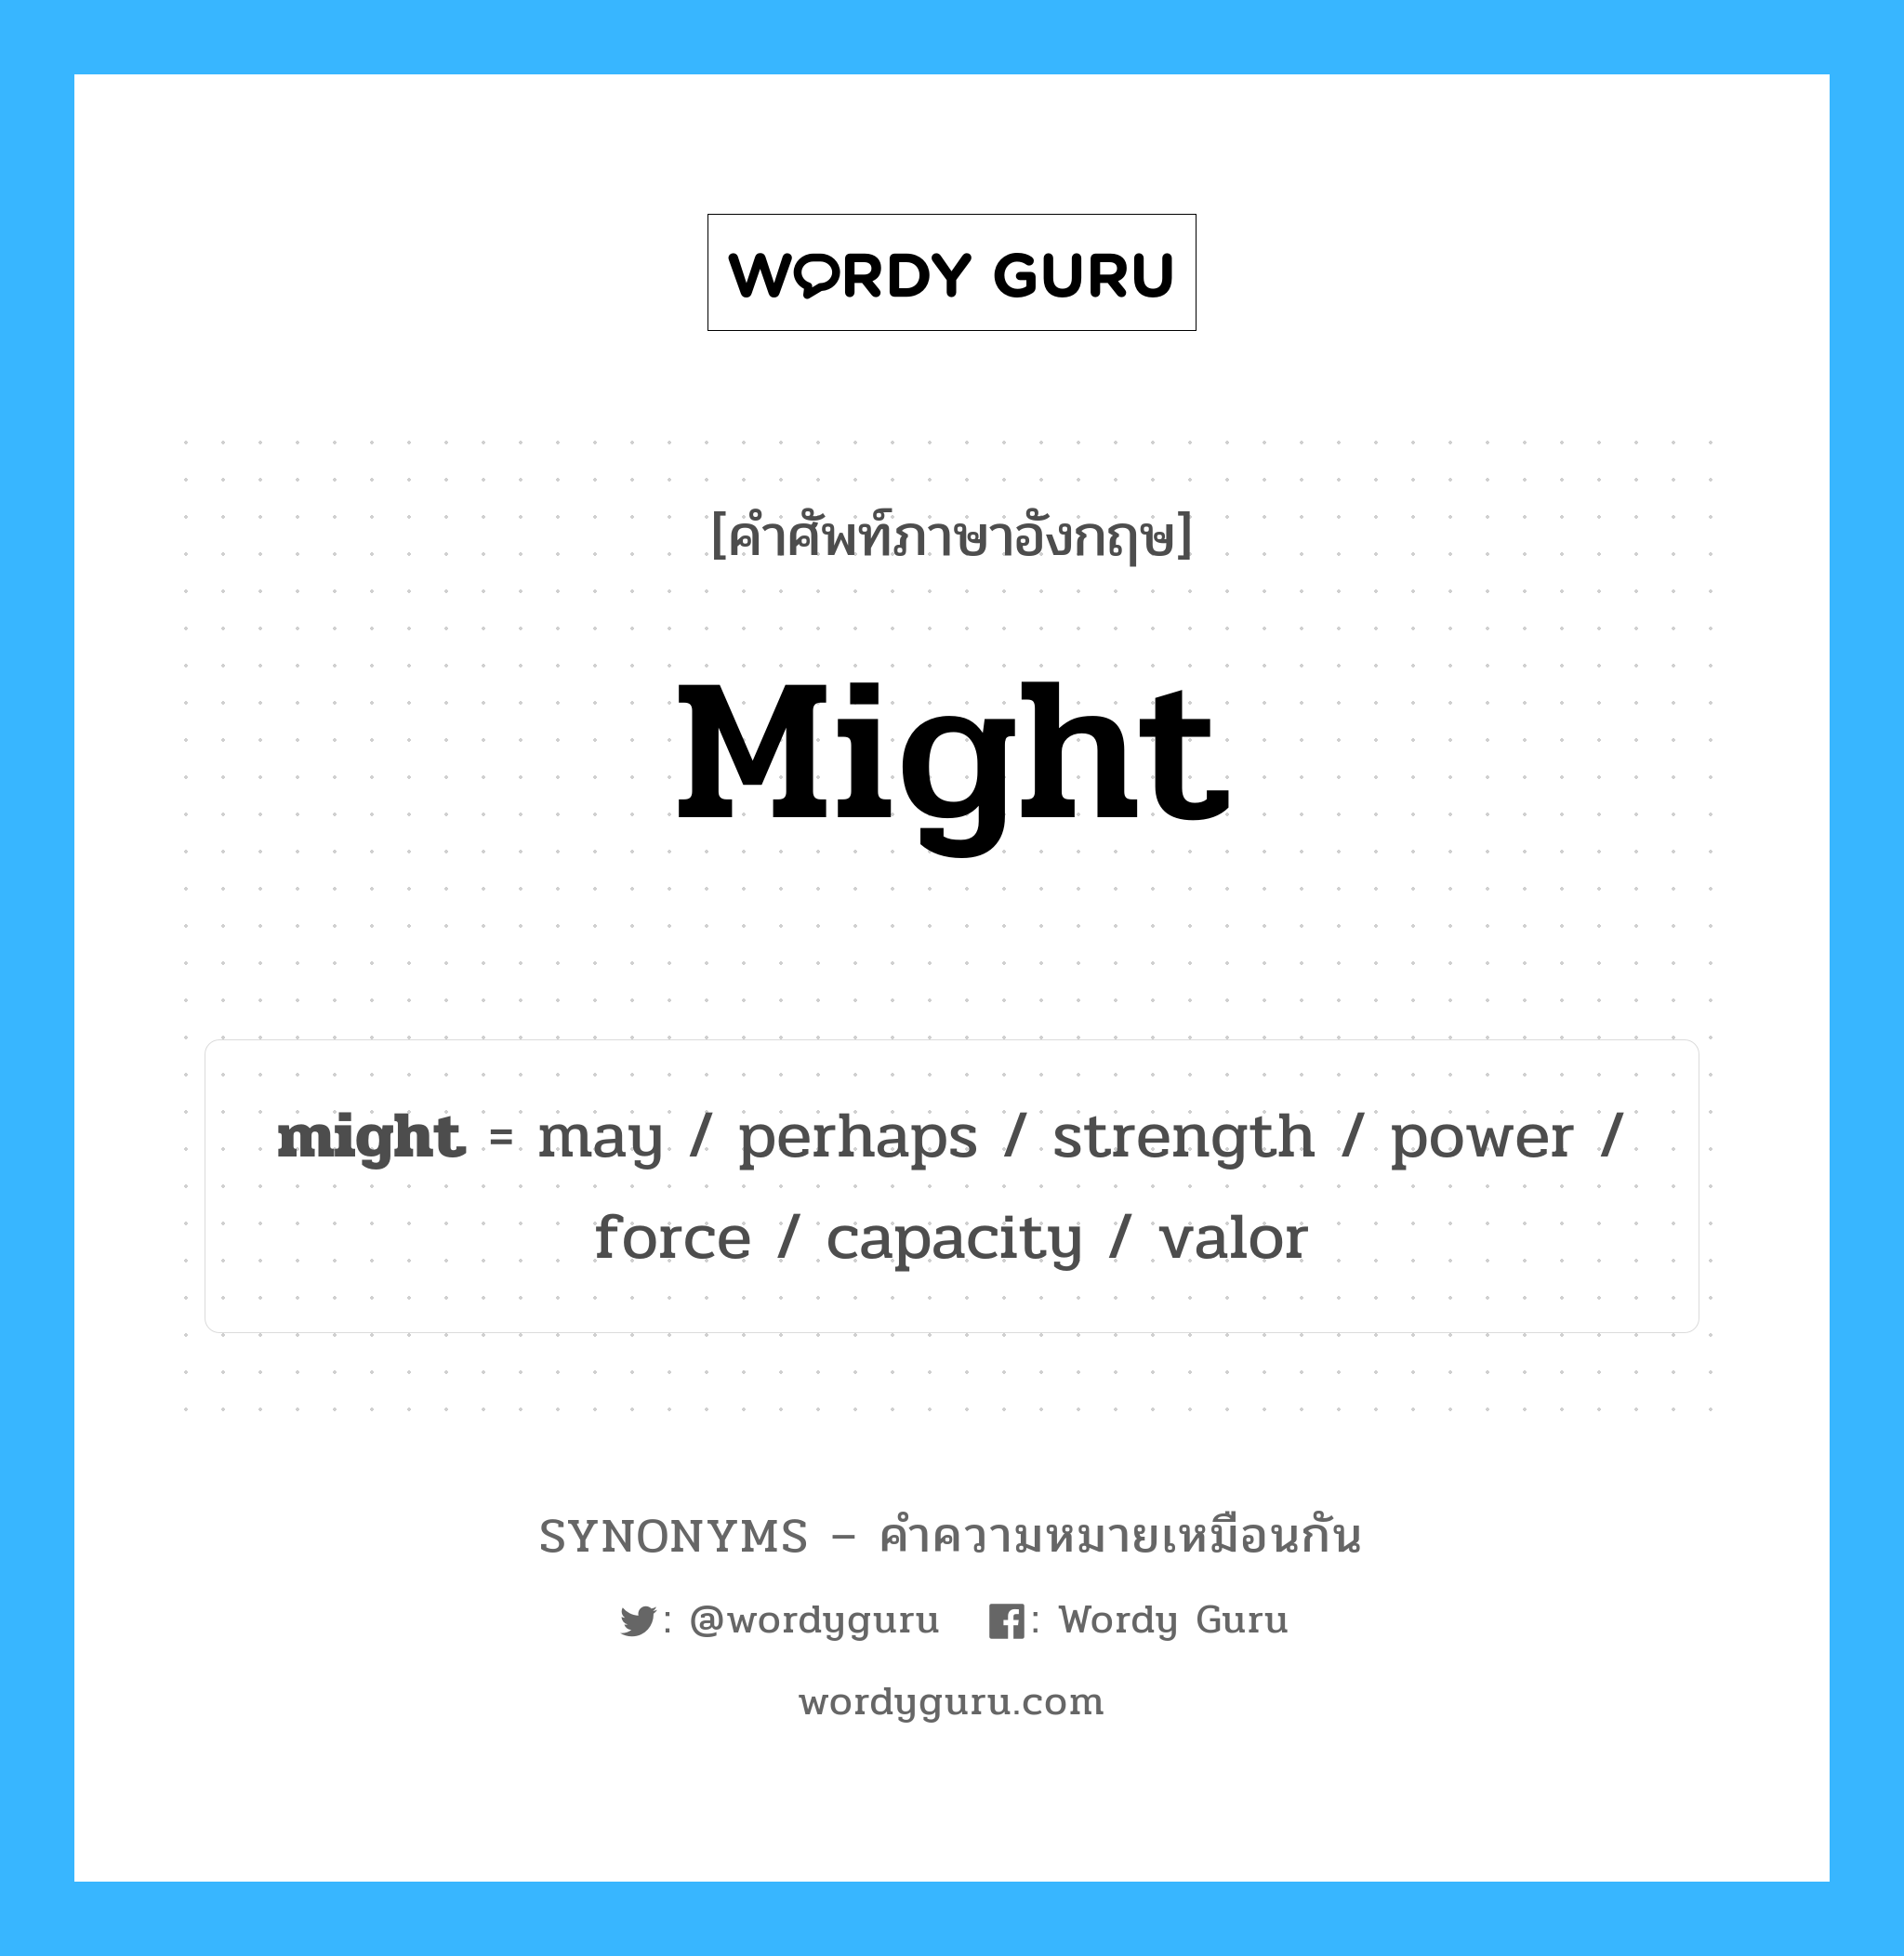 may เป็นหนึ่งใน might และมีคำอื่น ๆ อีกดังนี้, คำศัพท์ภาษาอังกฤษ may ความหมายคล้ายกันกับ might แปลว่า อาจ หมวด might